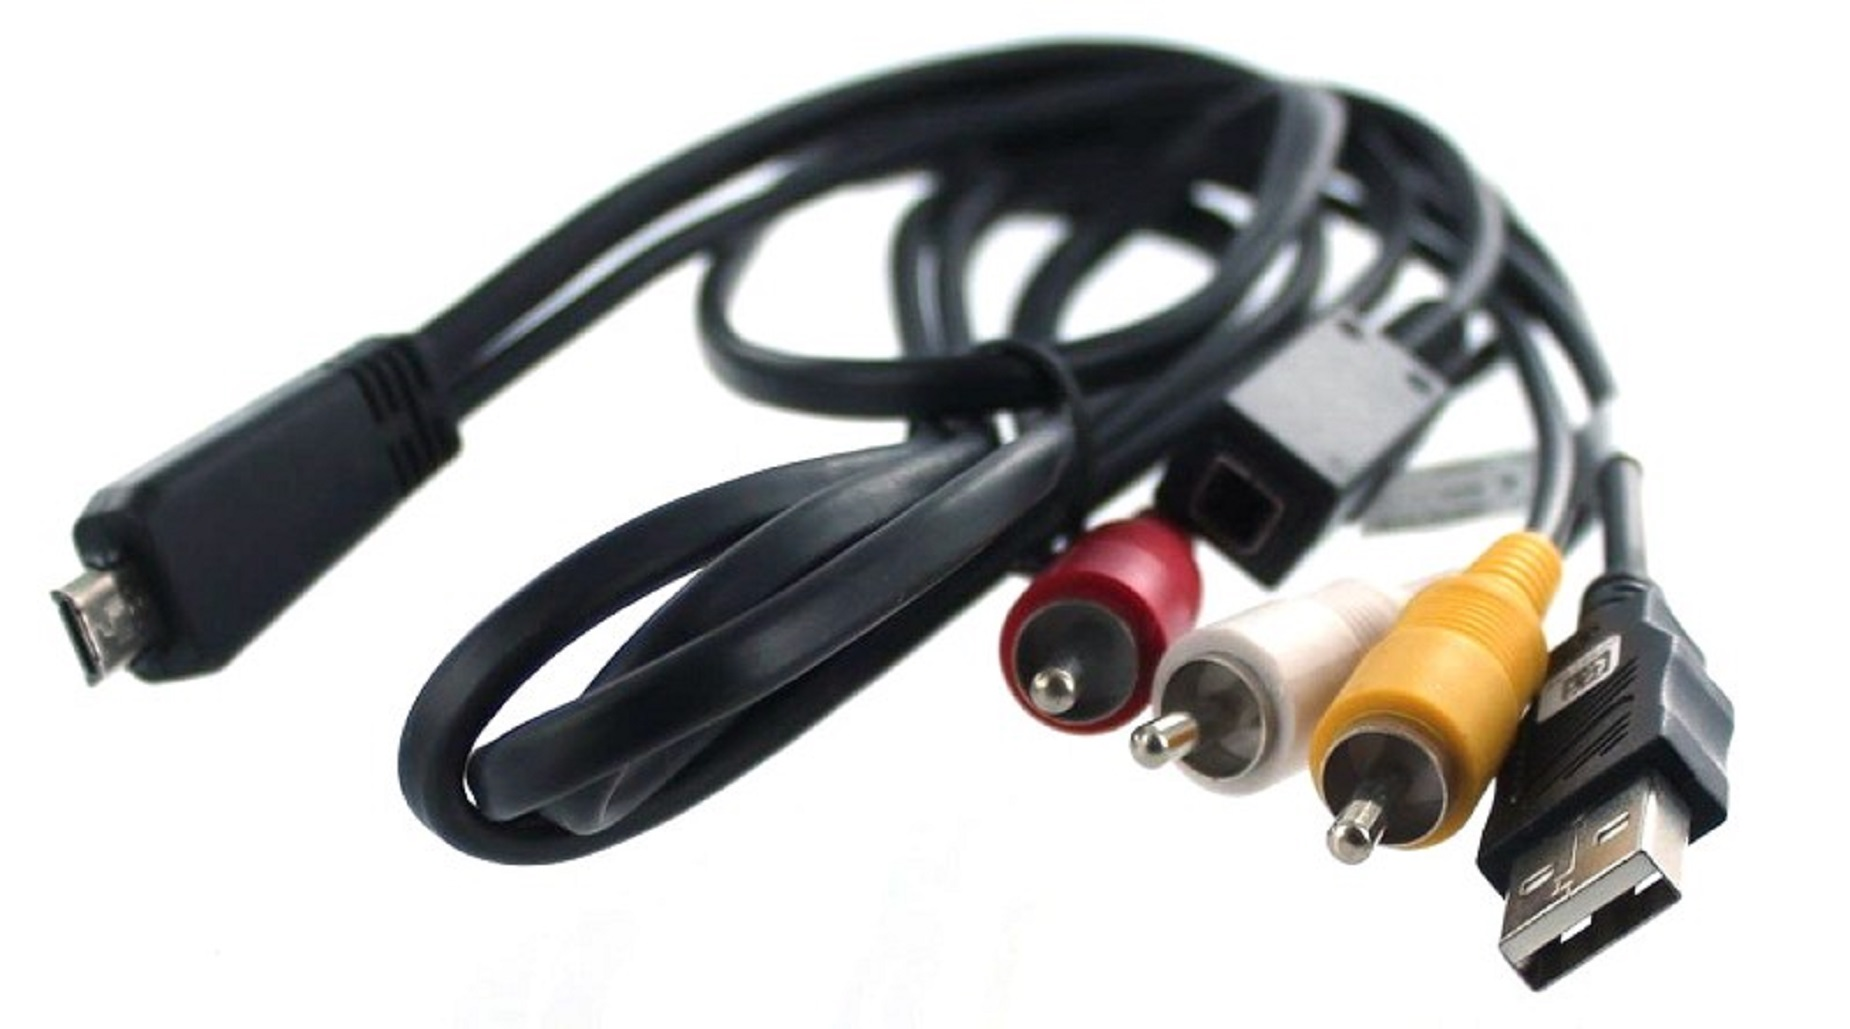 USB-/AV-Verbindungskabel Sony, Sony DSC-HX7V MOBILOTEC Zubehör schwarz kompatibel mit